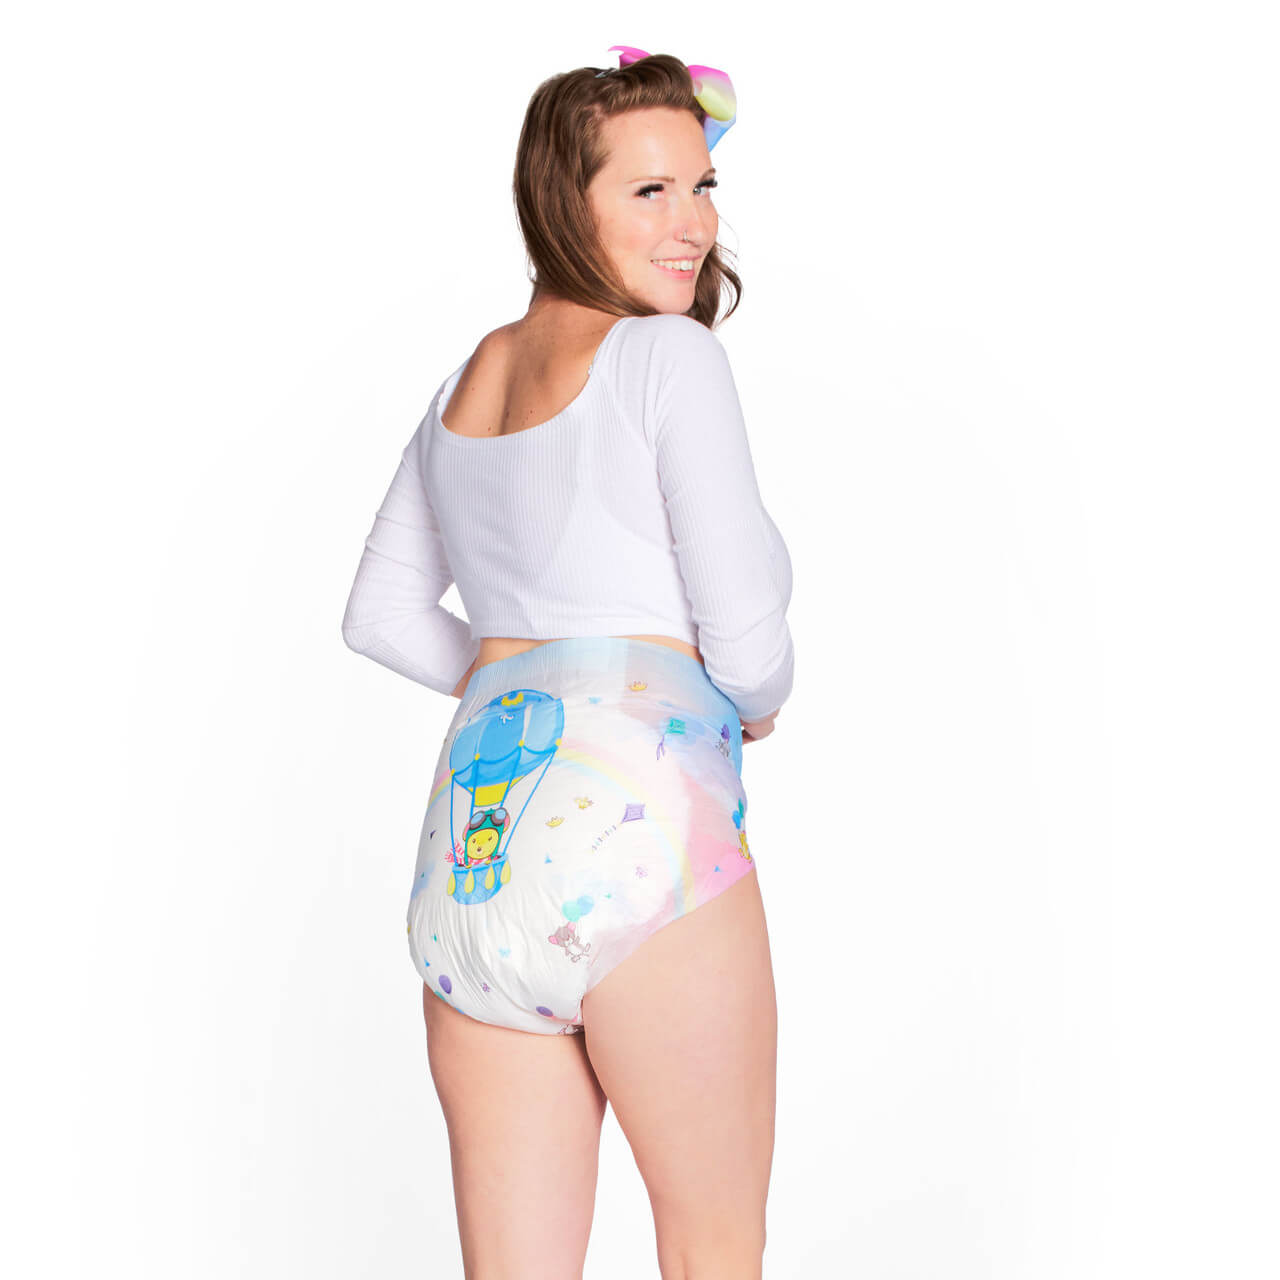 Best of Women in baby diapers tumblr